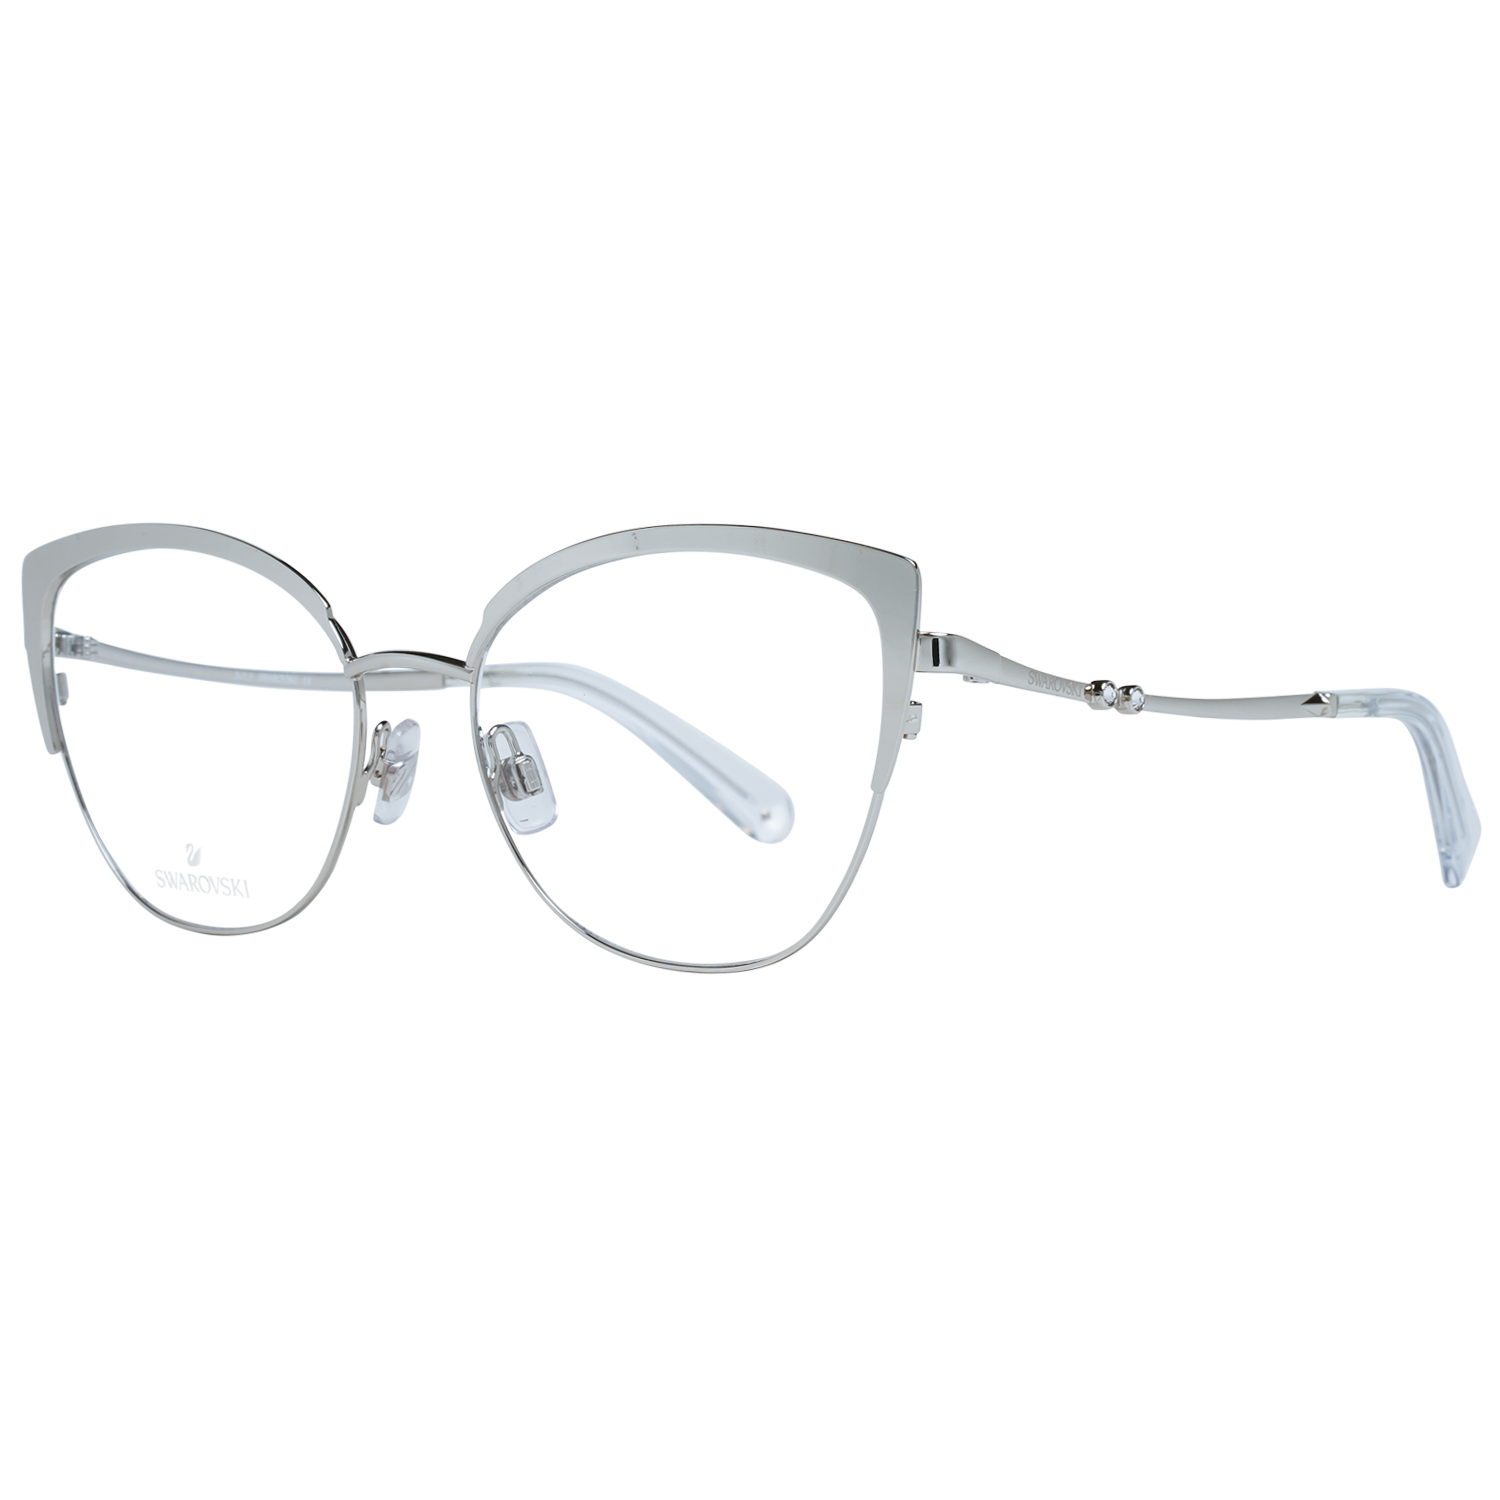 Swarovski Frames Swarovski Women Glasses Optical Frame SK5402 016 54 Eyeglasses Eyewear UK USA Australia 